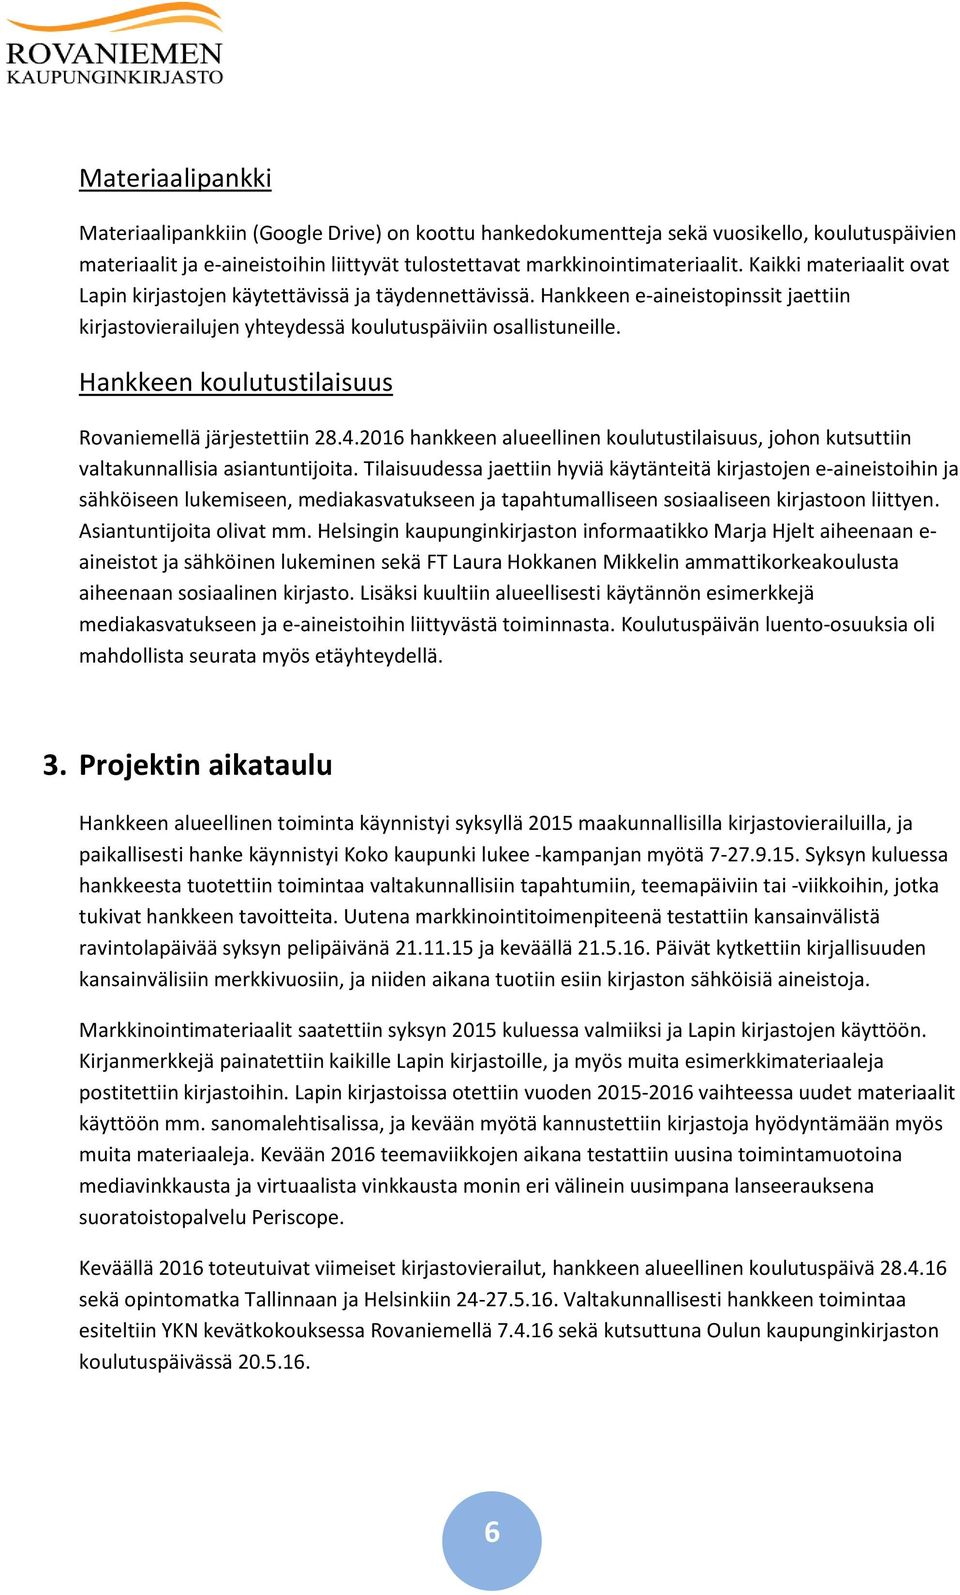 Hankkeen koulutustilaisuus Rovaniemellä järjestettiin 28.4.2016 hankkeen alueellinen koulutustilaisuus, johon kutsuttiin valtakunnallisia asiantuntijoita.